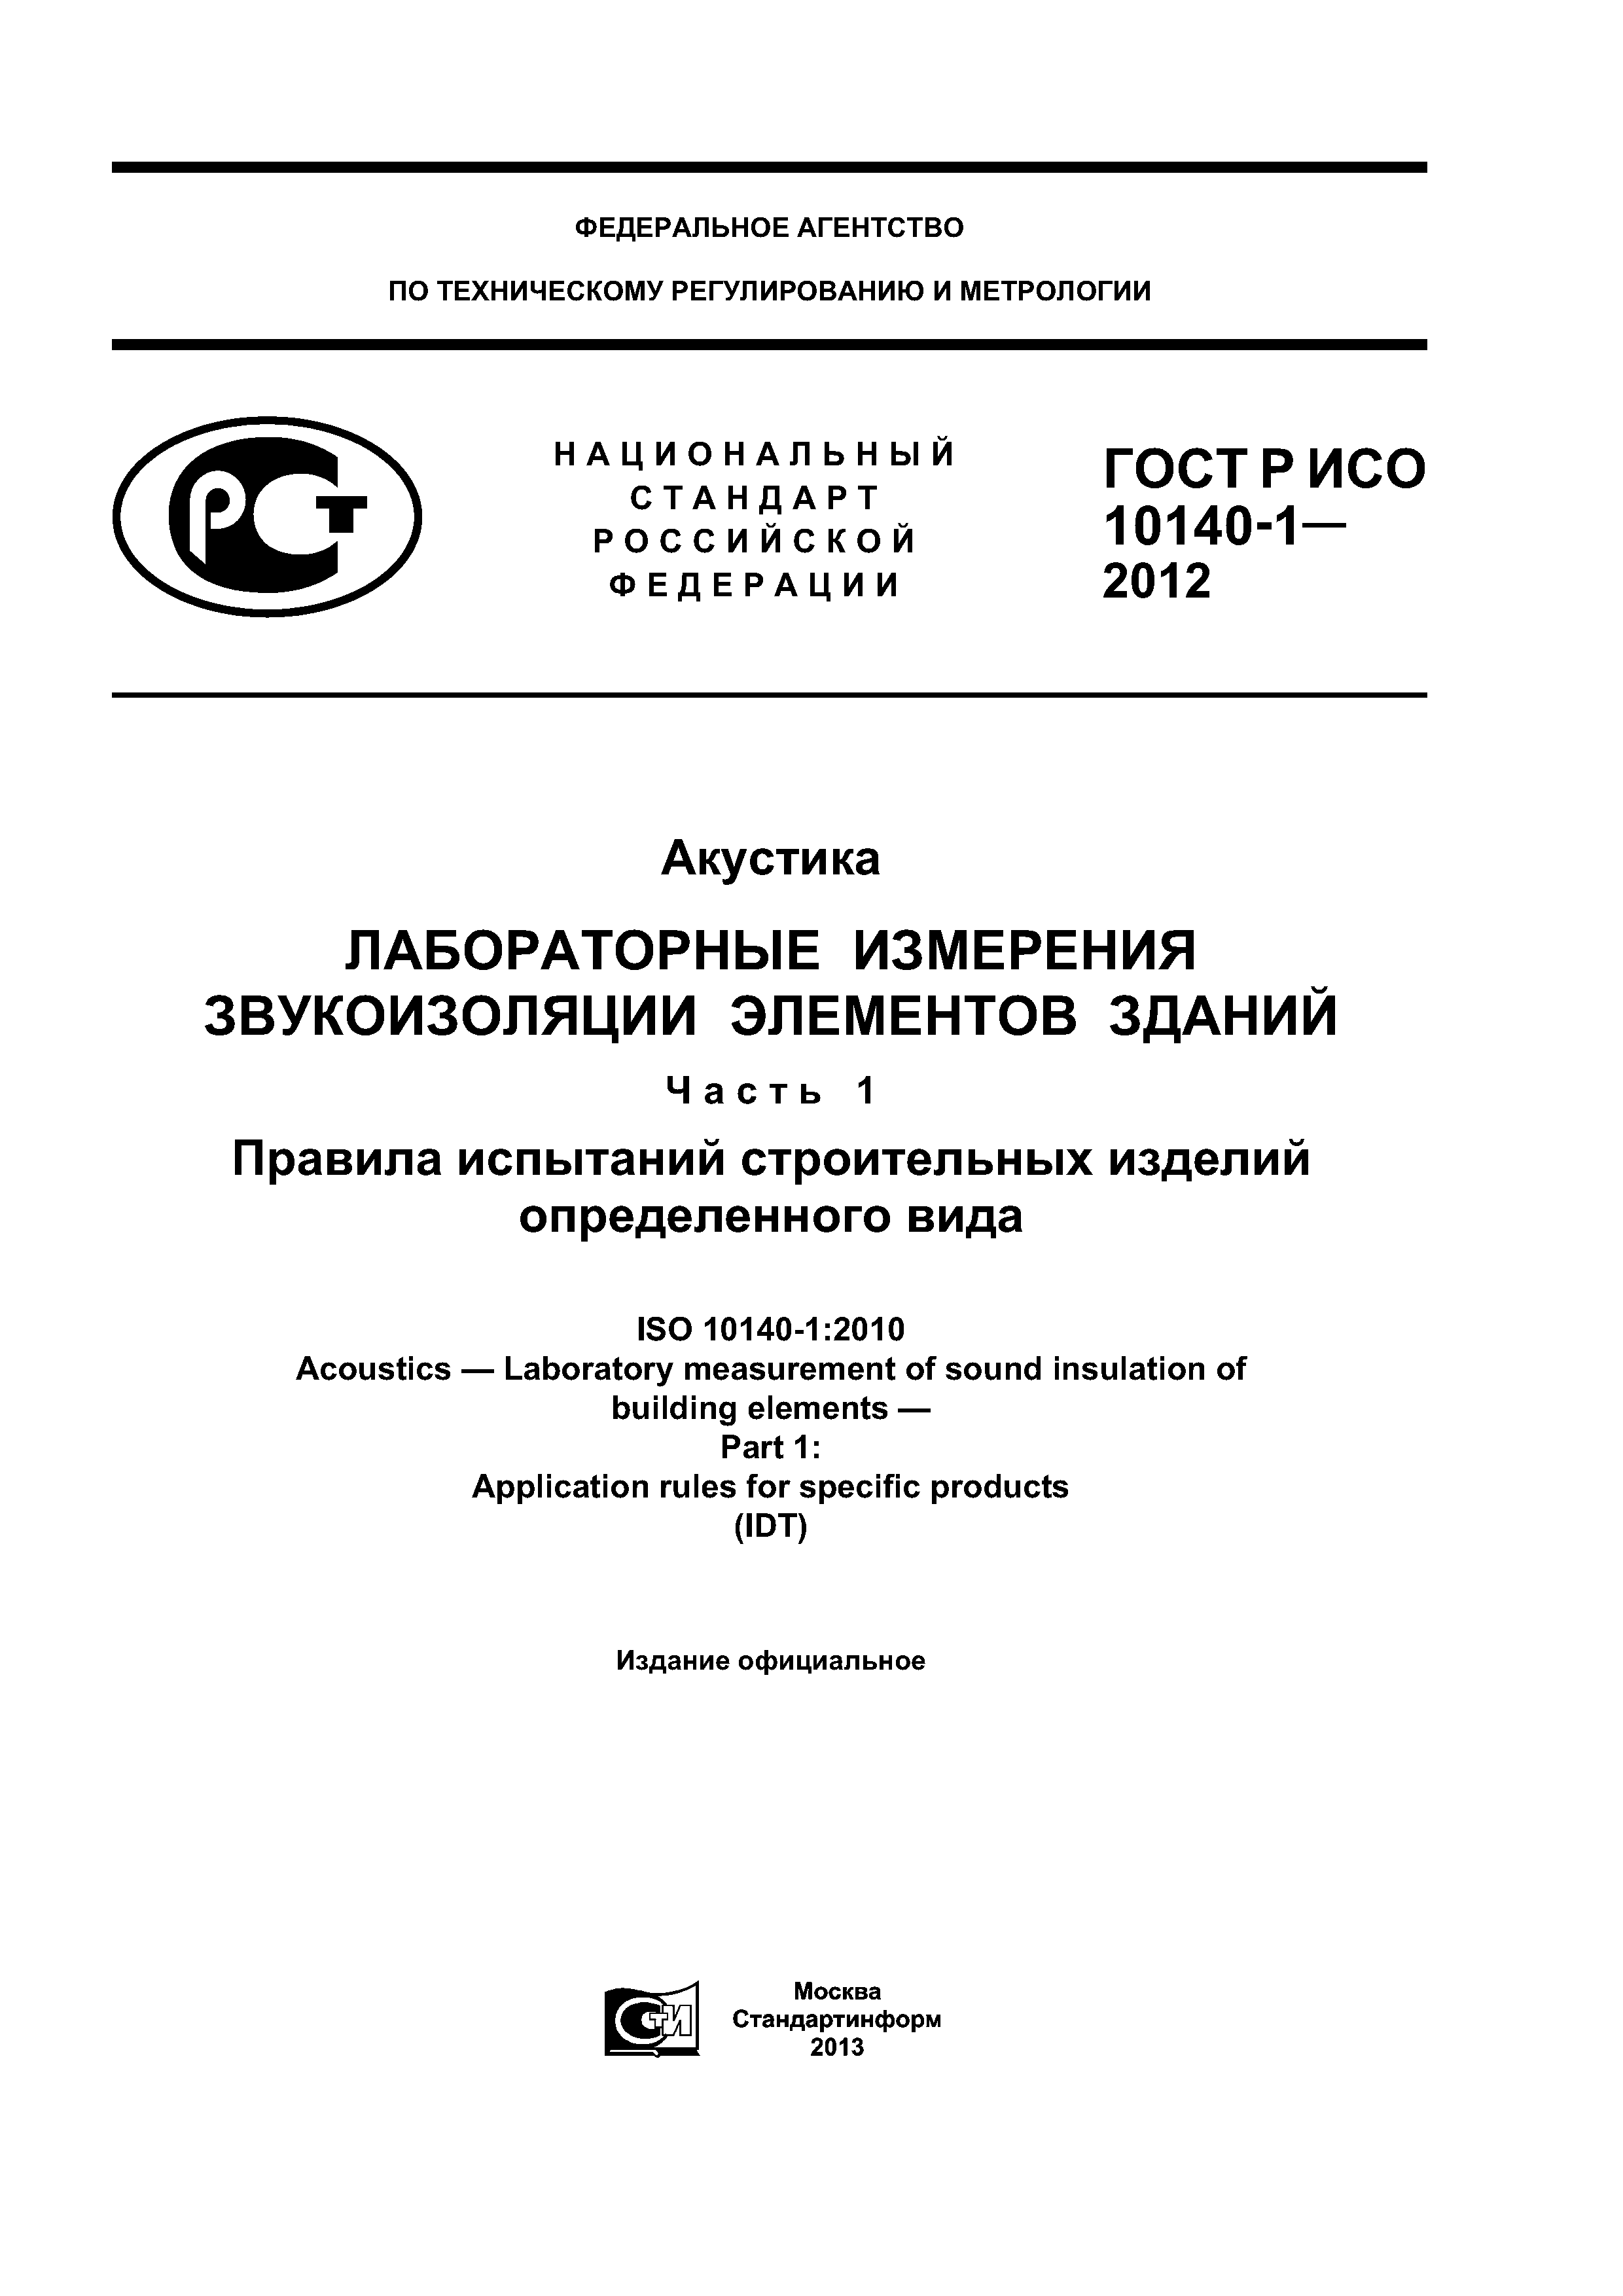 ГОСТ Р ИСО 10140-1-2012